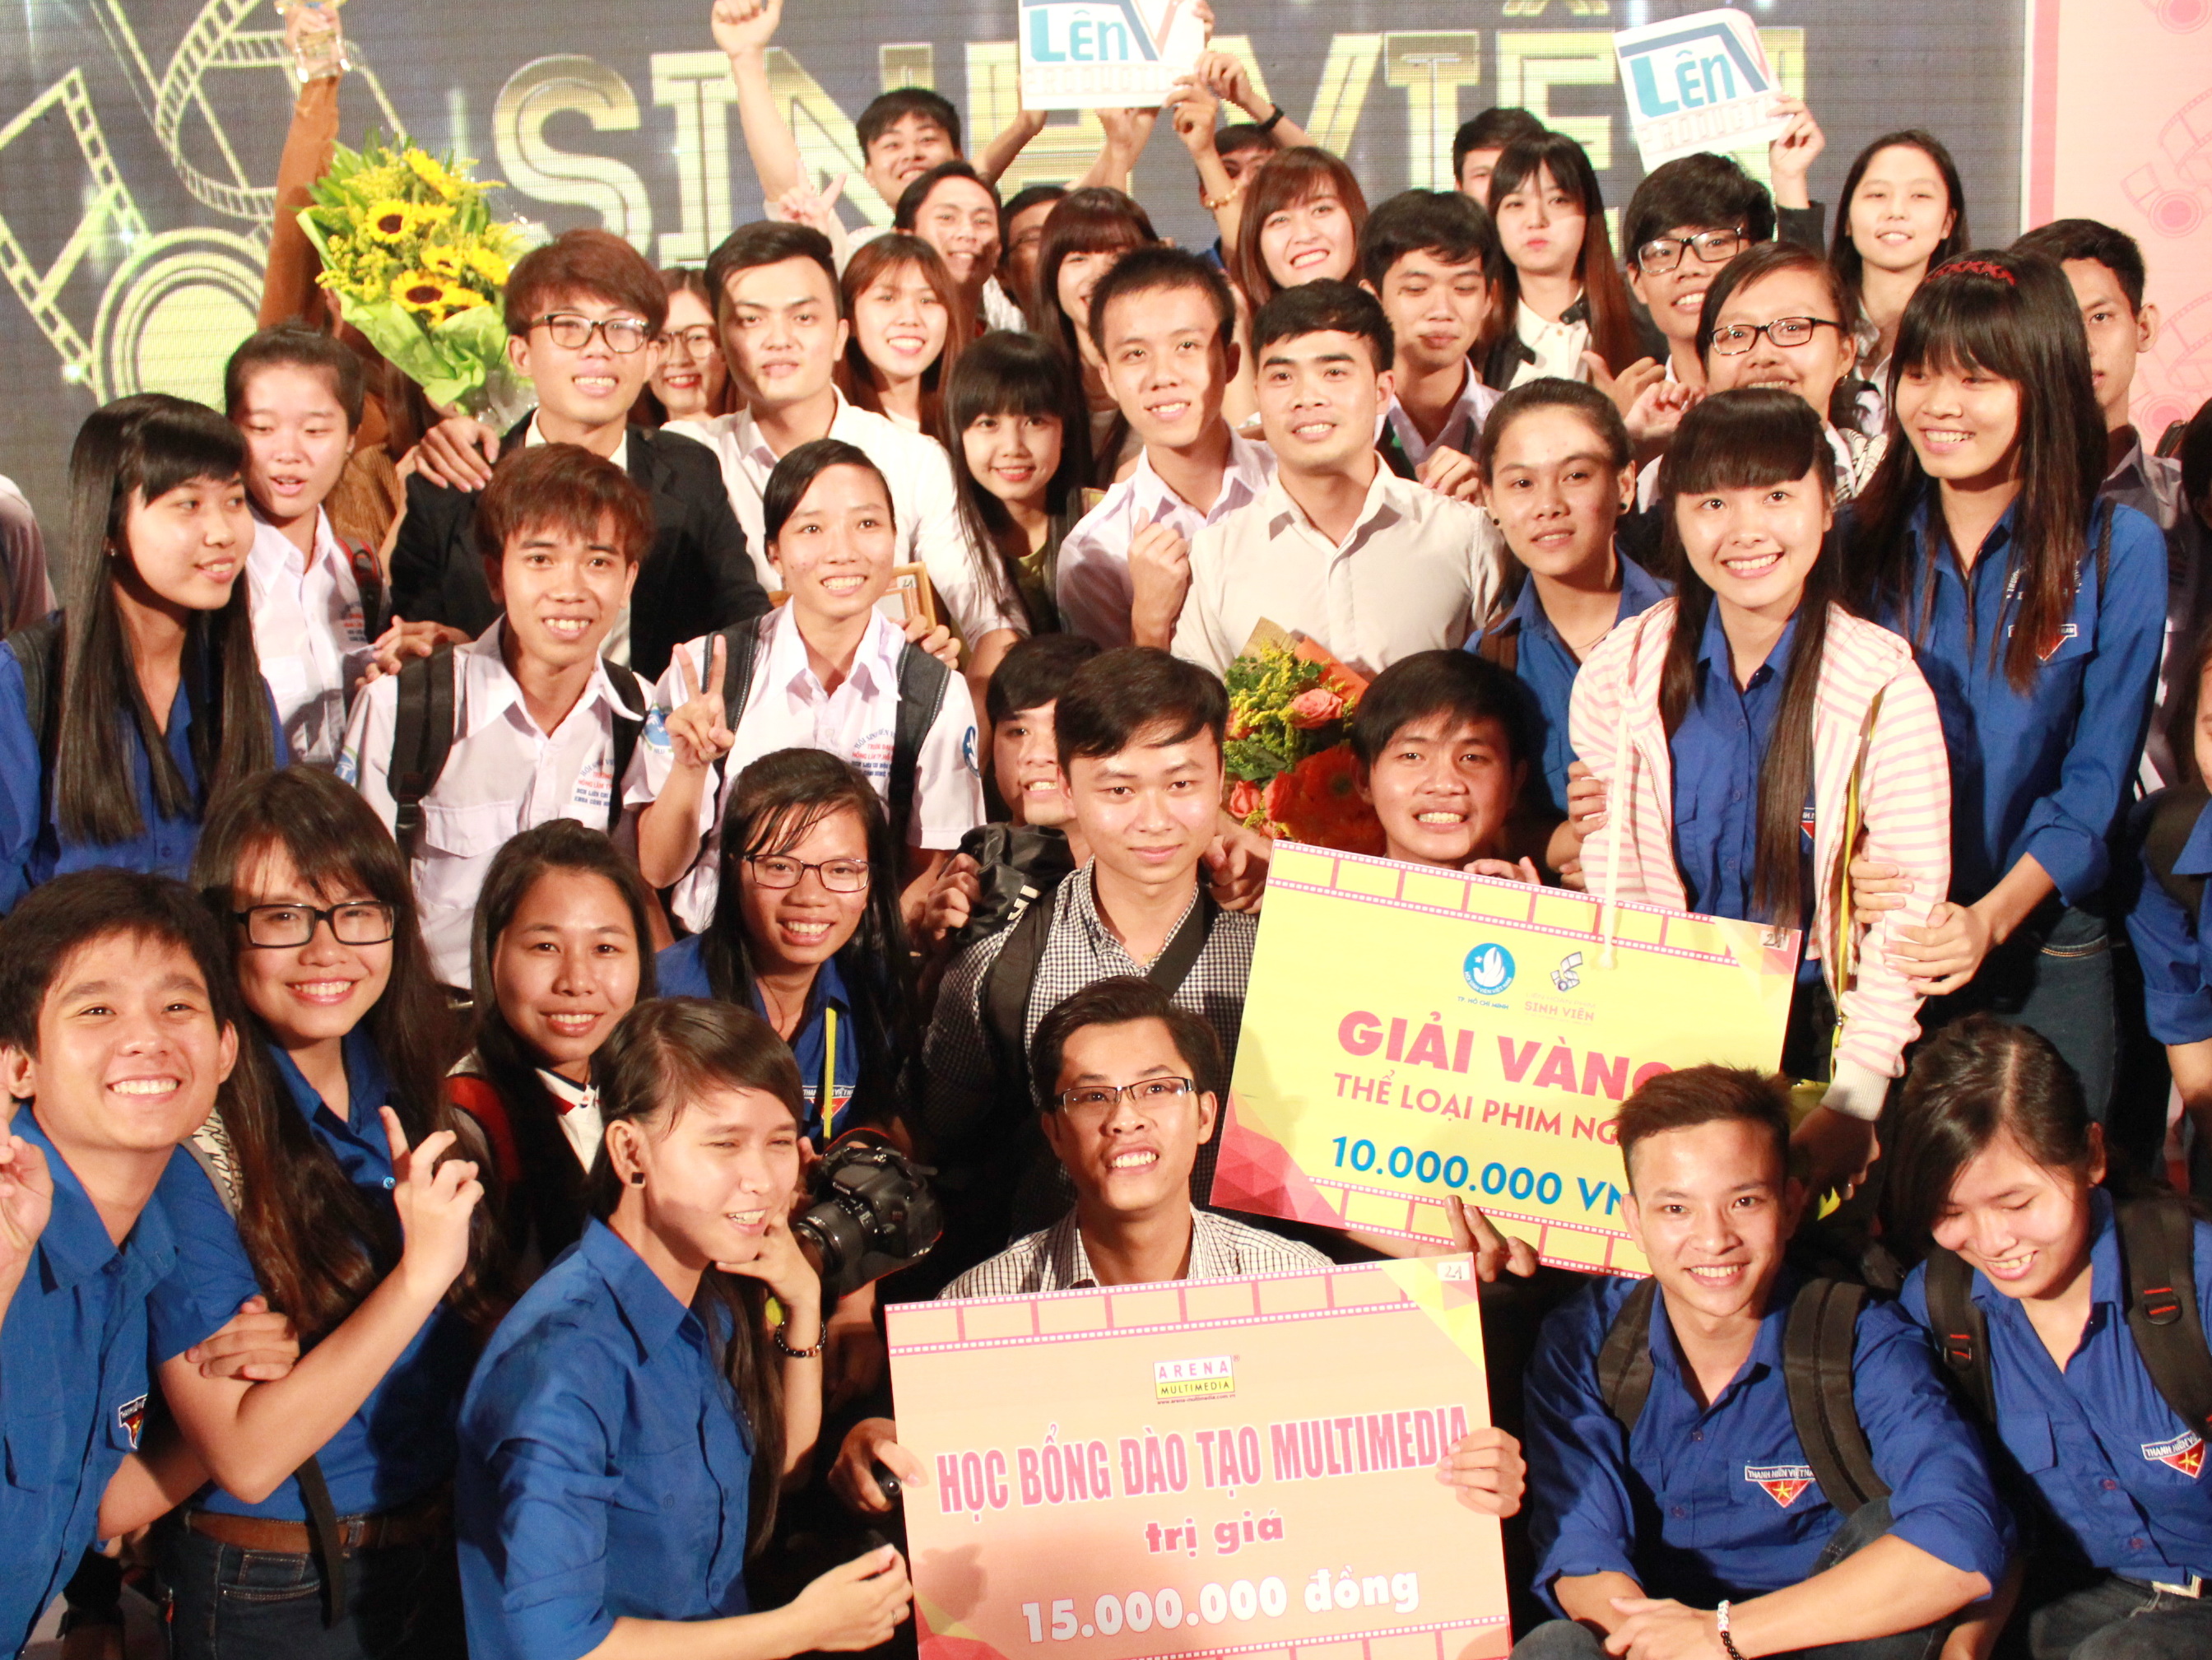 Bạn bè chúc mừng nhóm sinh viên ĐH Nông lâm TP.HCM với phim Người thầy năm ấy giành giải vàng thể loại phim ngắn - Ảnh: Q.L.